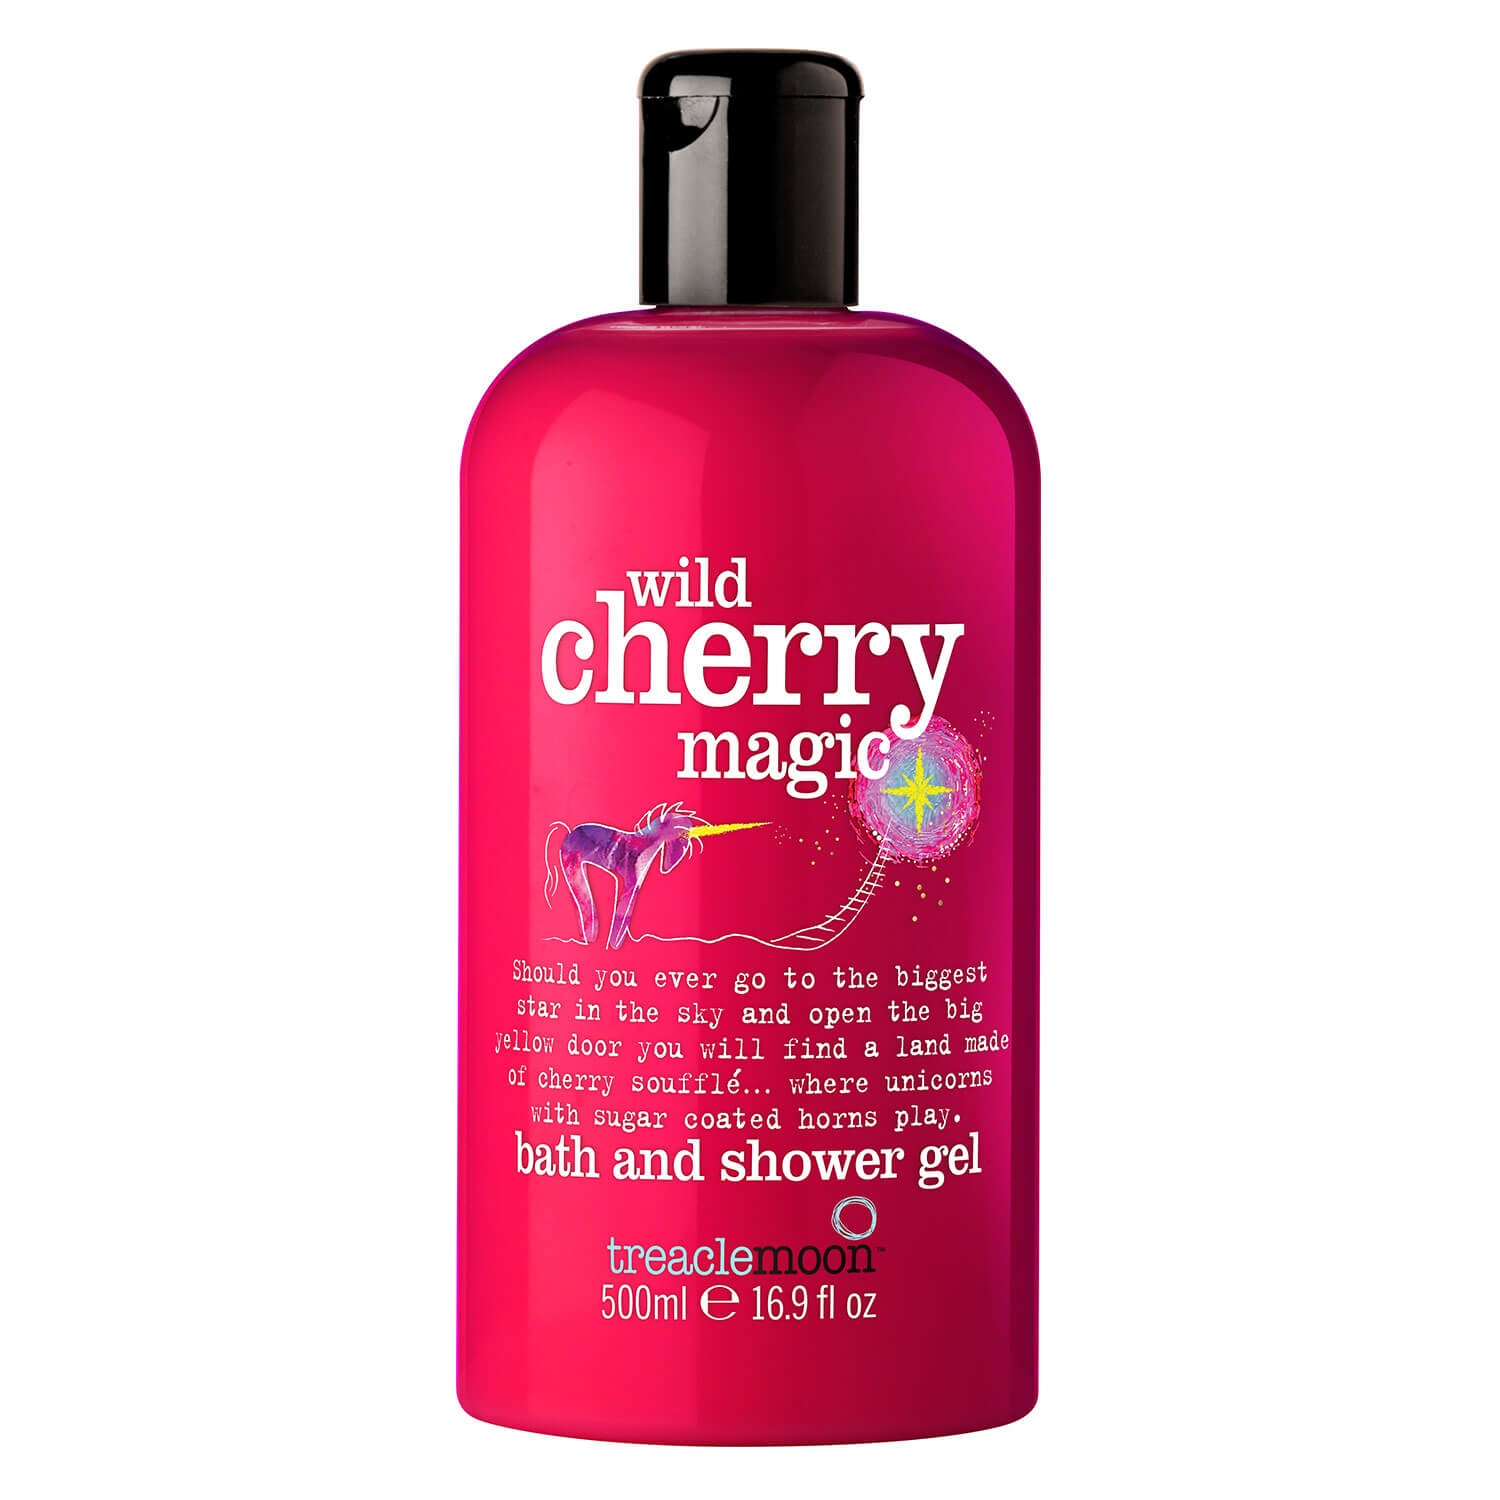 Produktbild von treaclemoon - wild cherry magic shower and bath gel